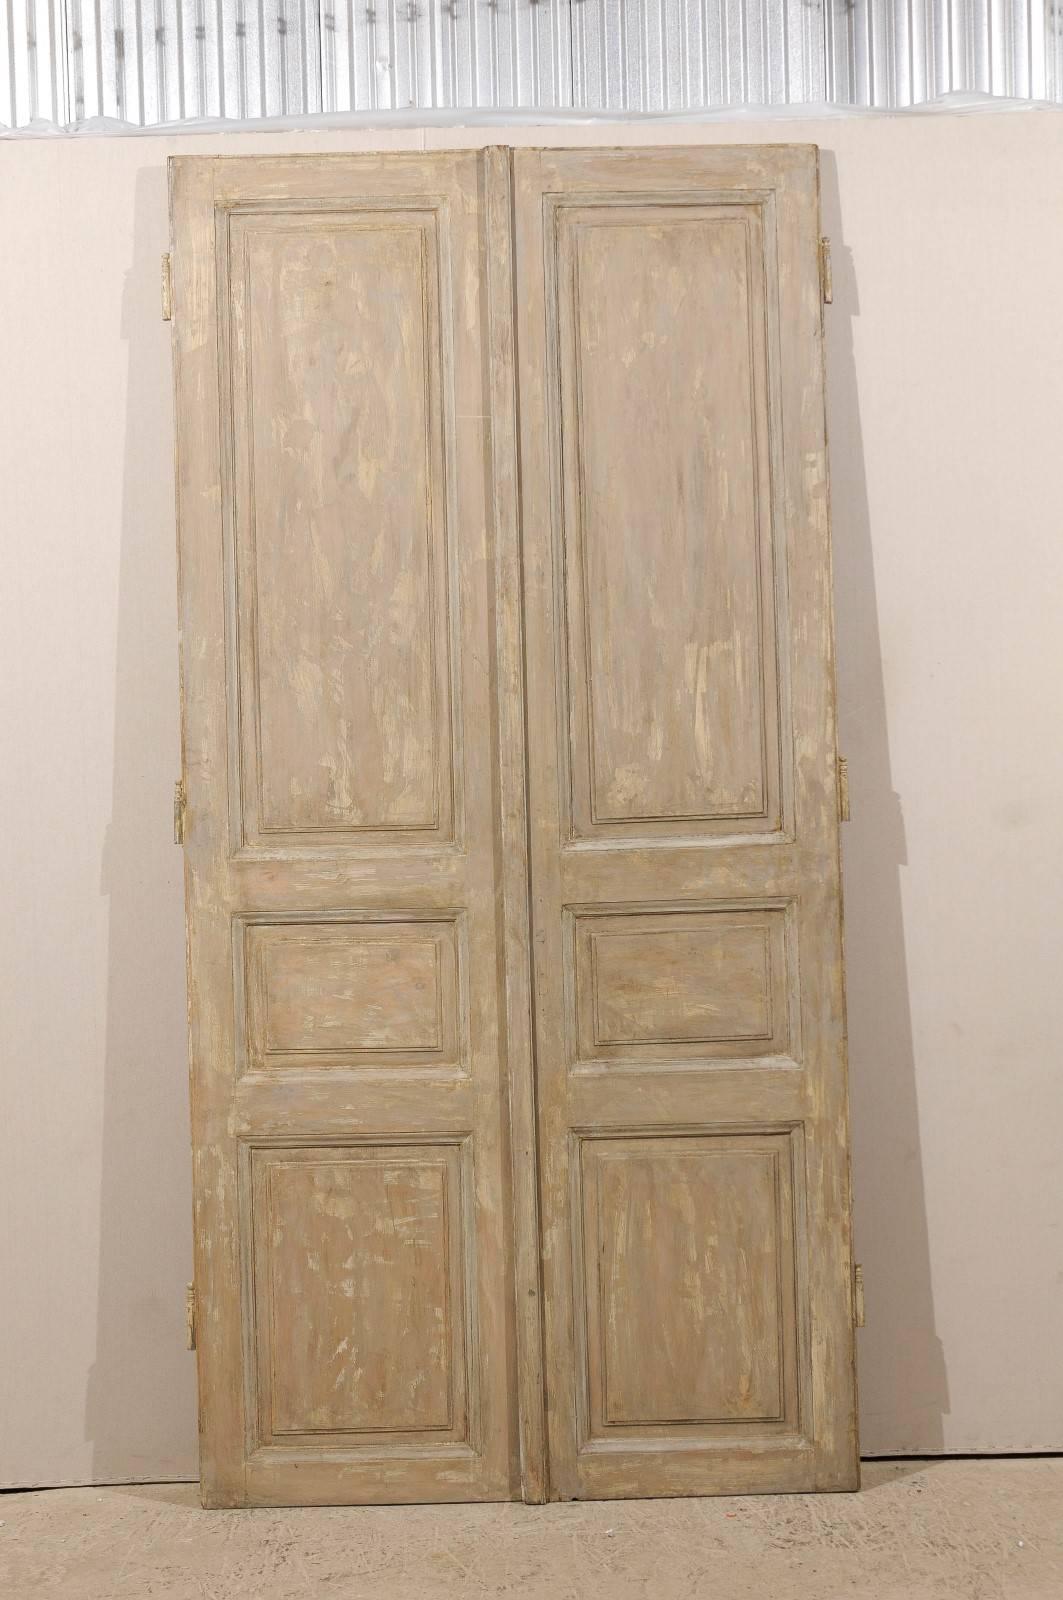 grey wooden doors